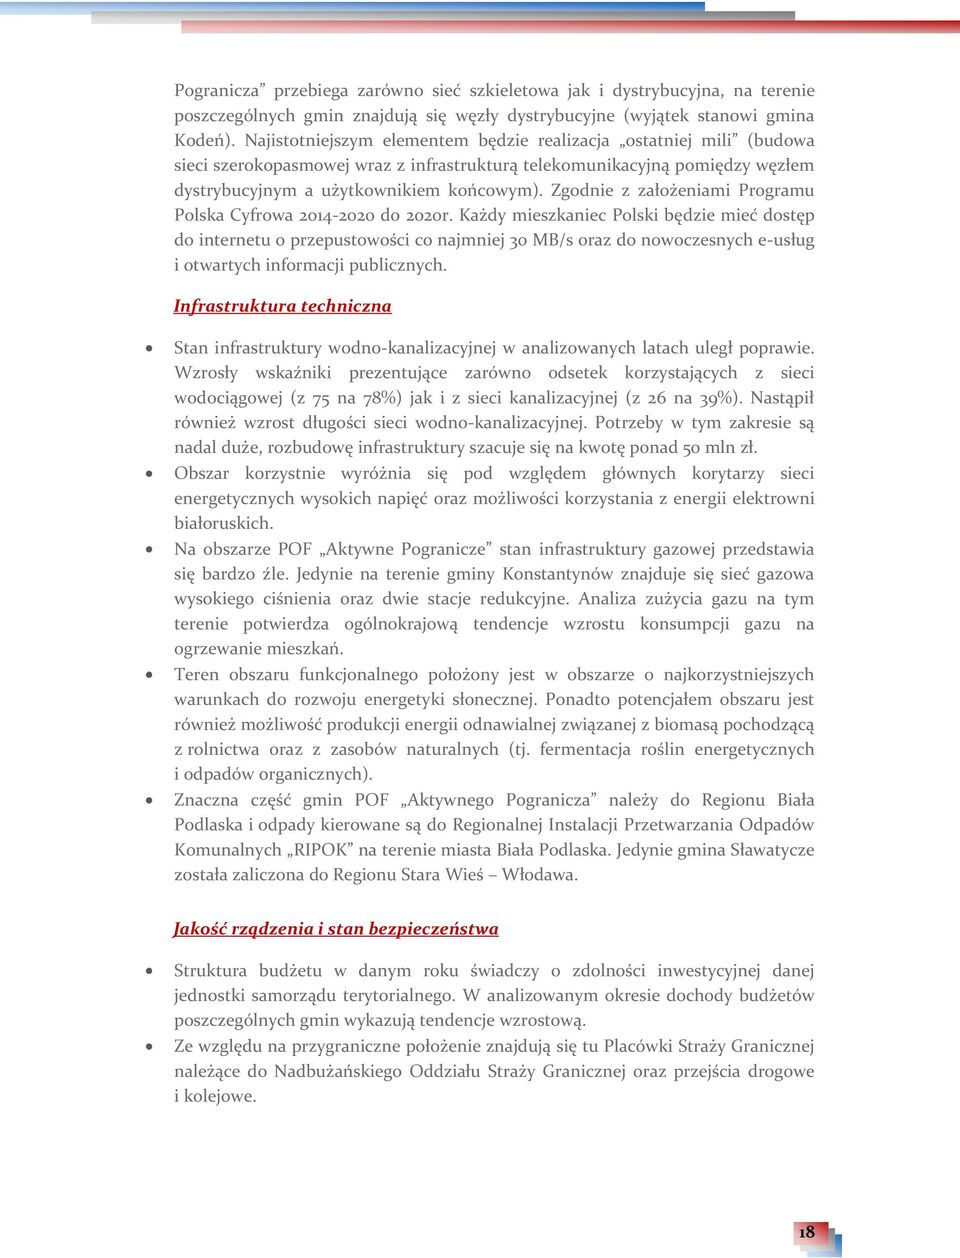 Zgodnie z założeniami Programu Polska Cyfrowa 2014-2020 do 2020r.